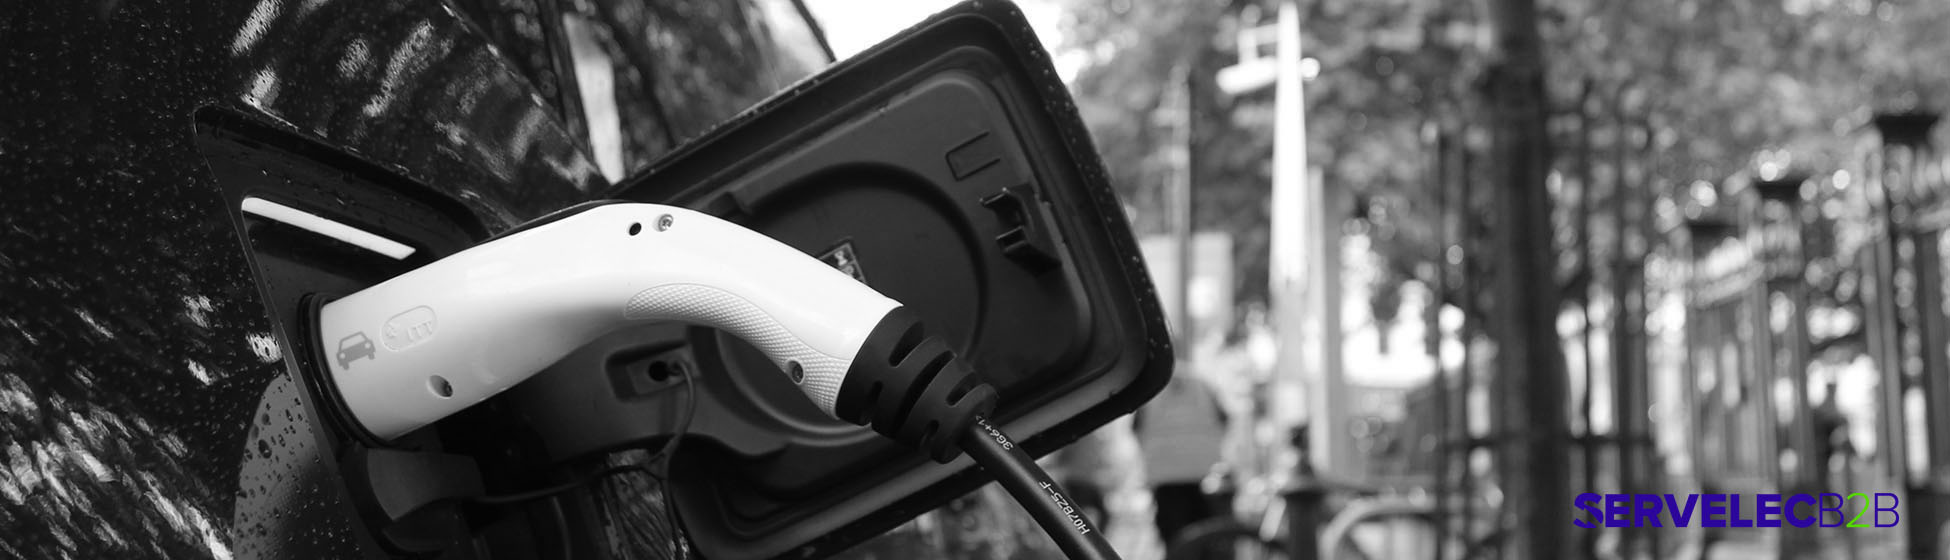 Borne de recharge voiture électrique prix